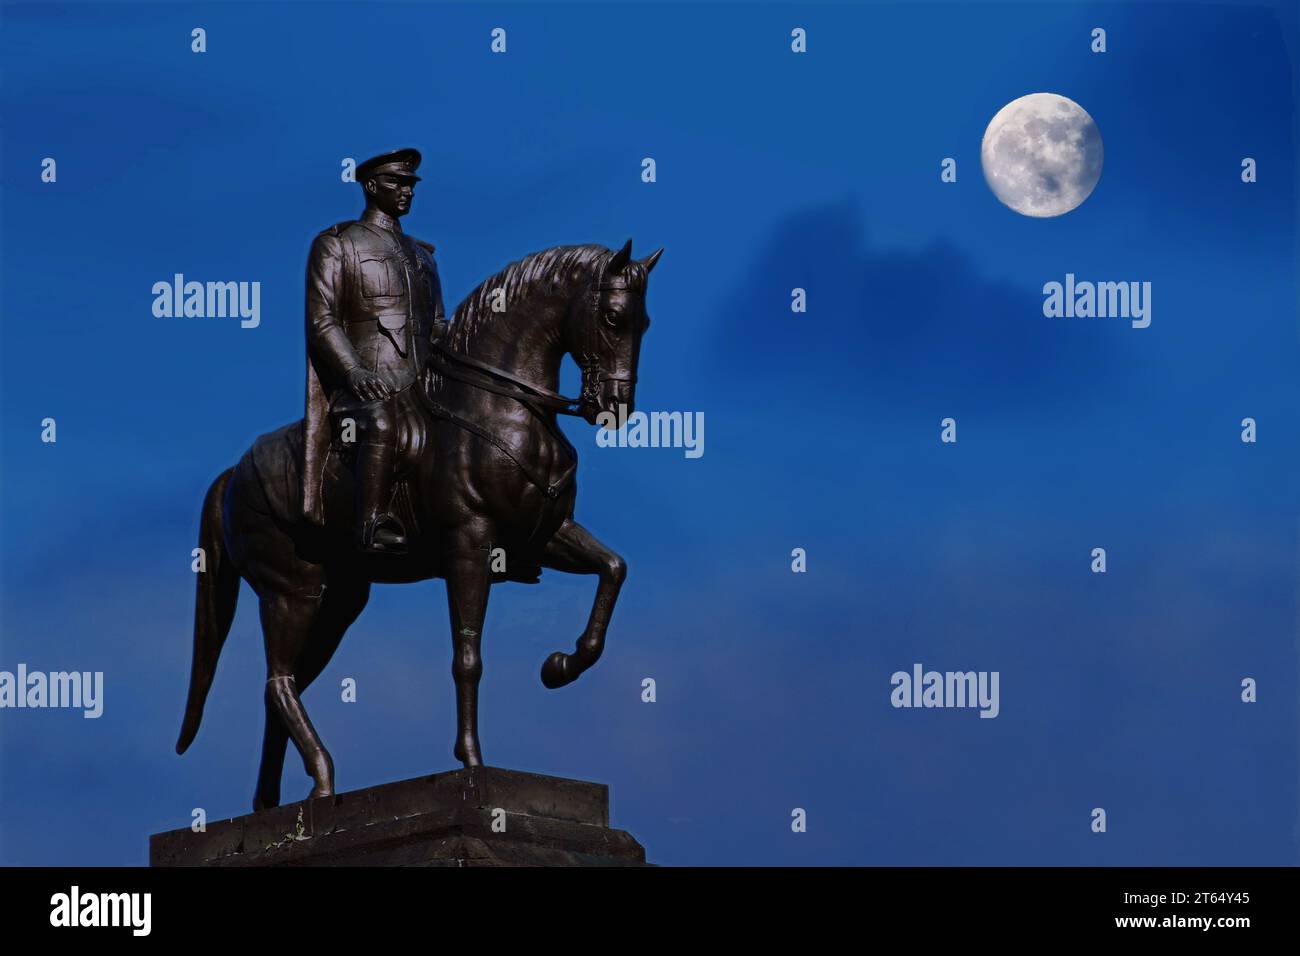 Statue Ataturk sur le cheval avec la lune. 10 novembre Ataturk concept de journée de commémoration. Banque D'Images